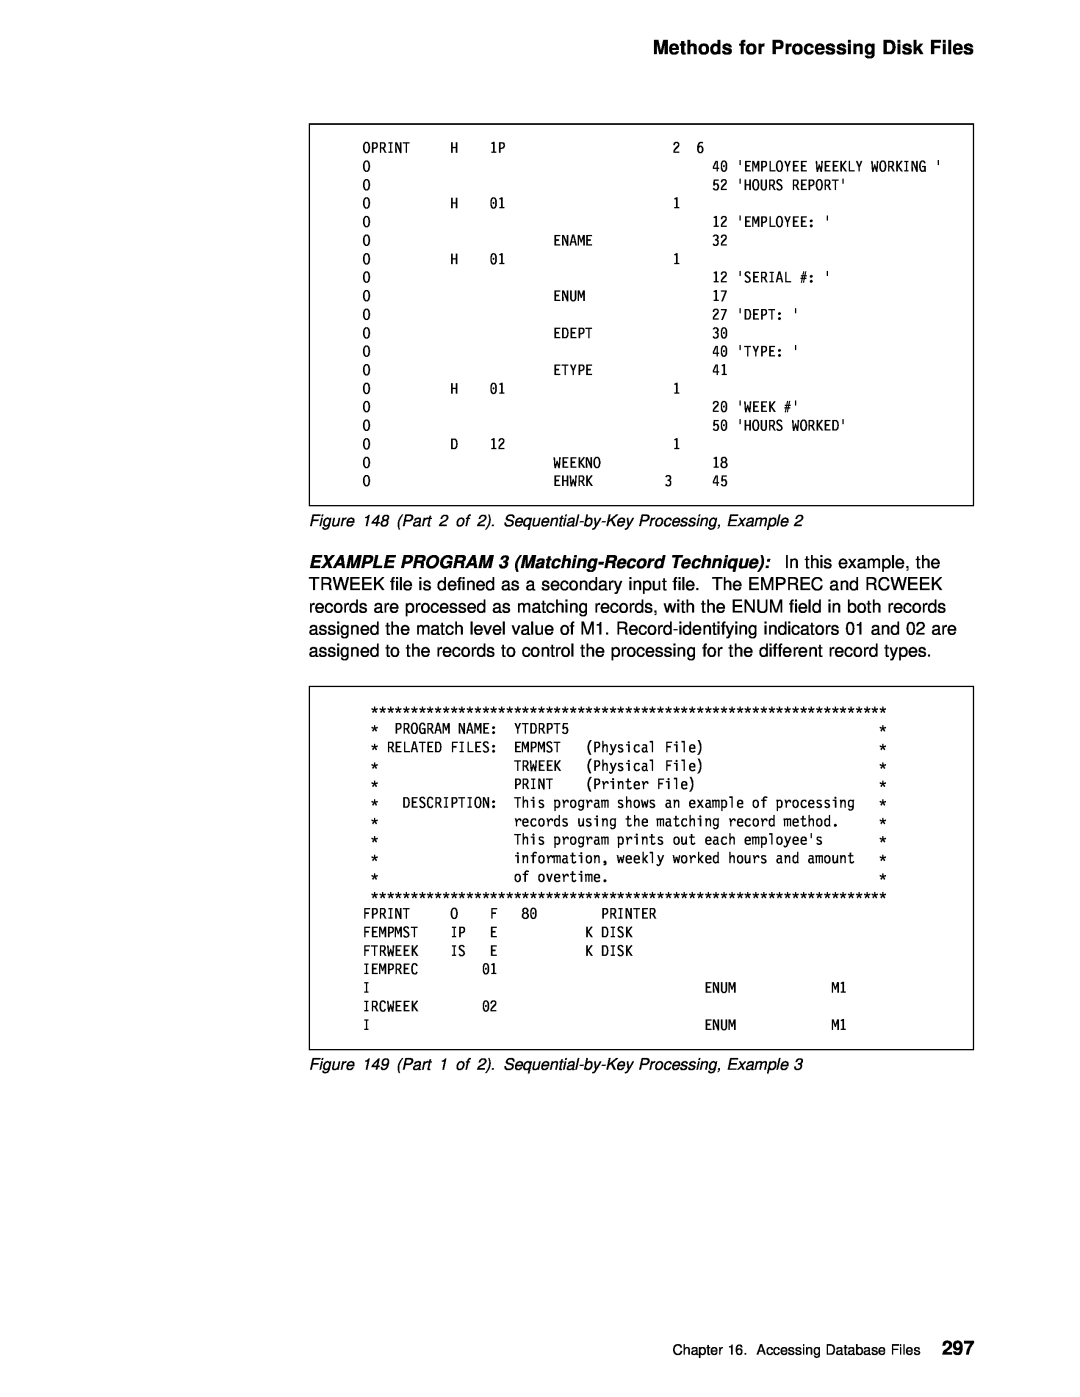 IBM AS/400 manual for Processing Disk Files, Enum 